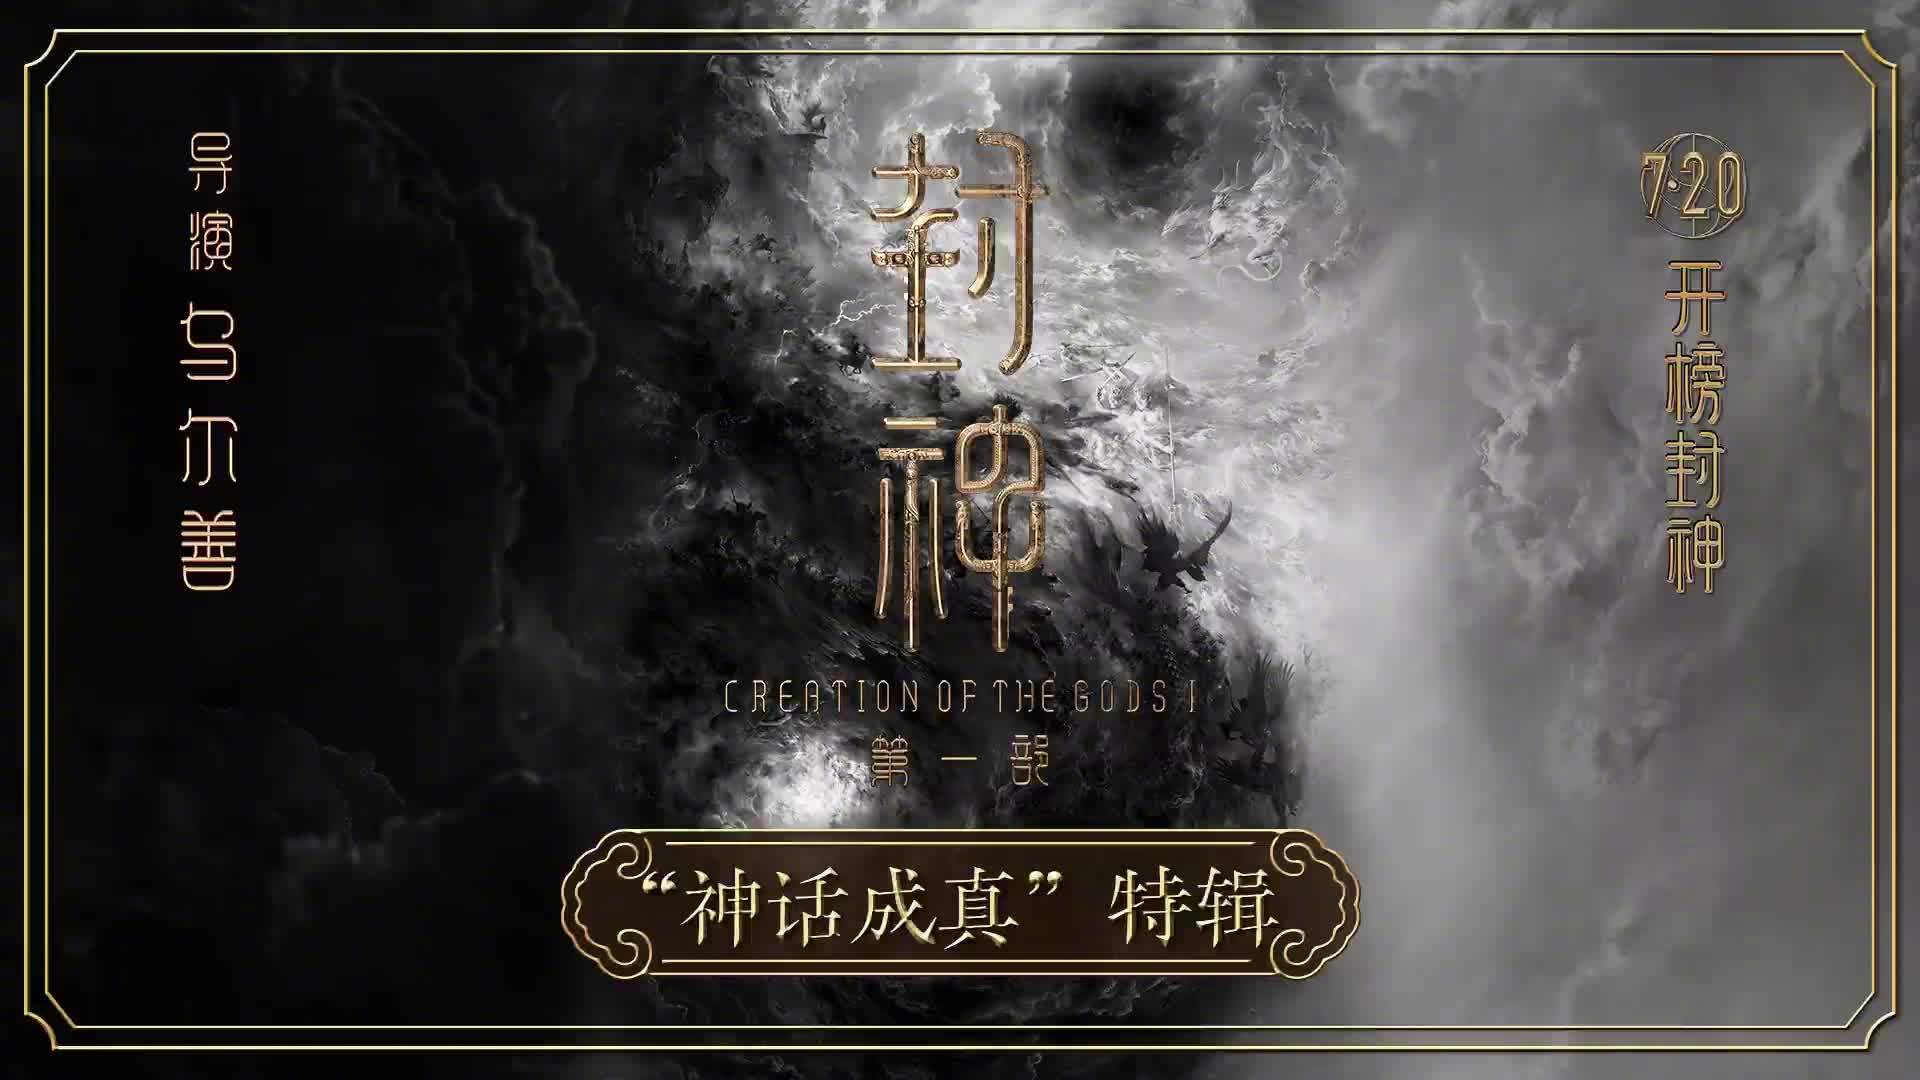 中国首部国民神话史诗电影《封神第一部》发布“神话成真”特辑